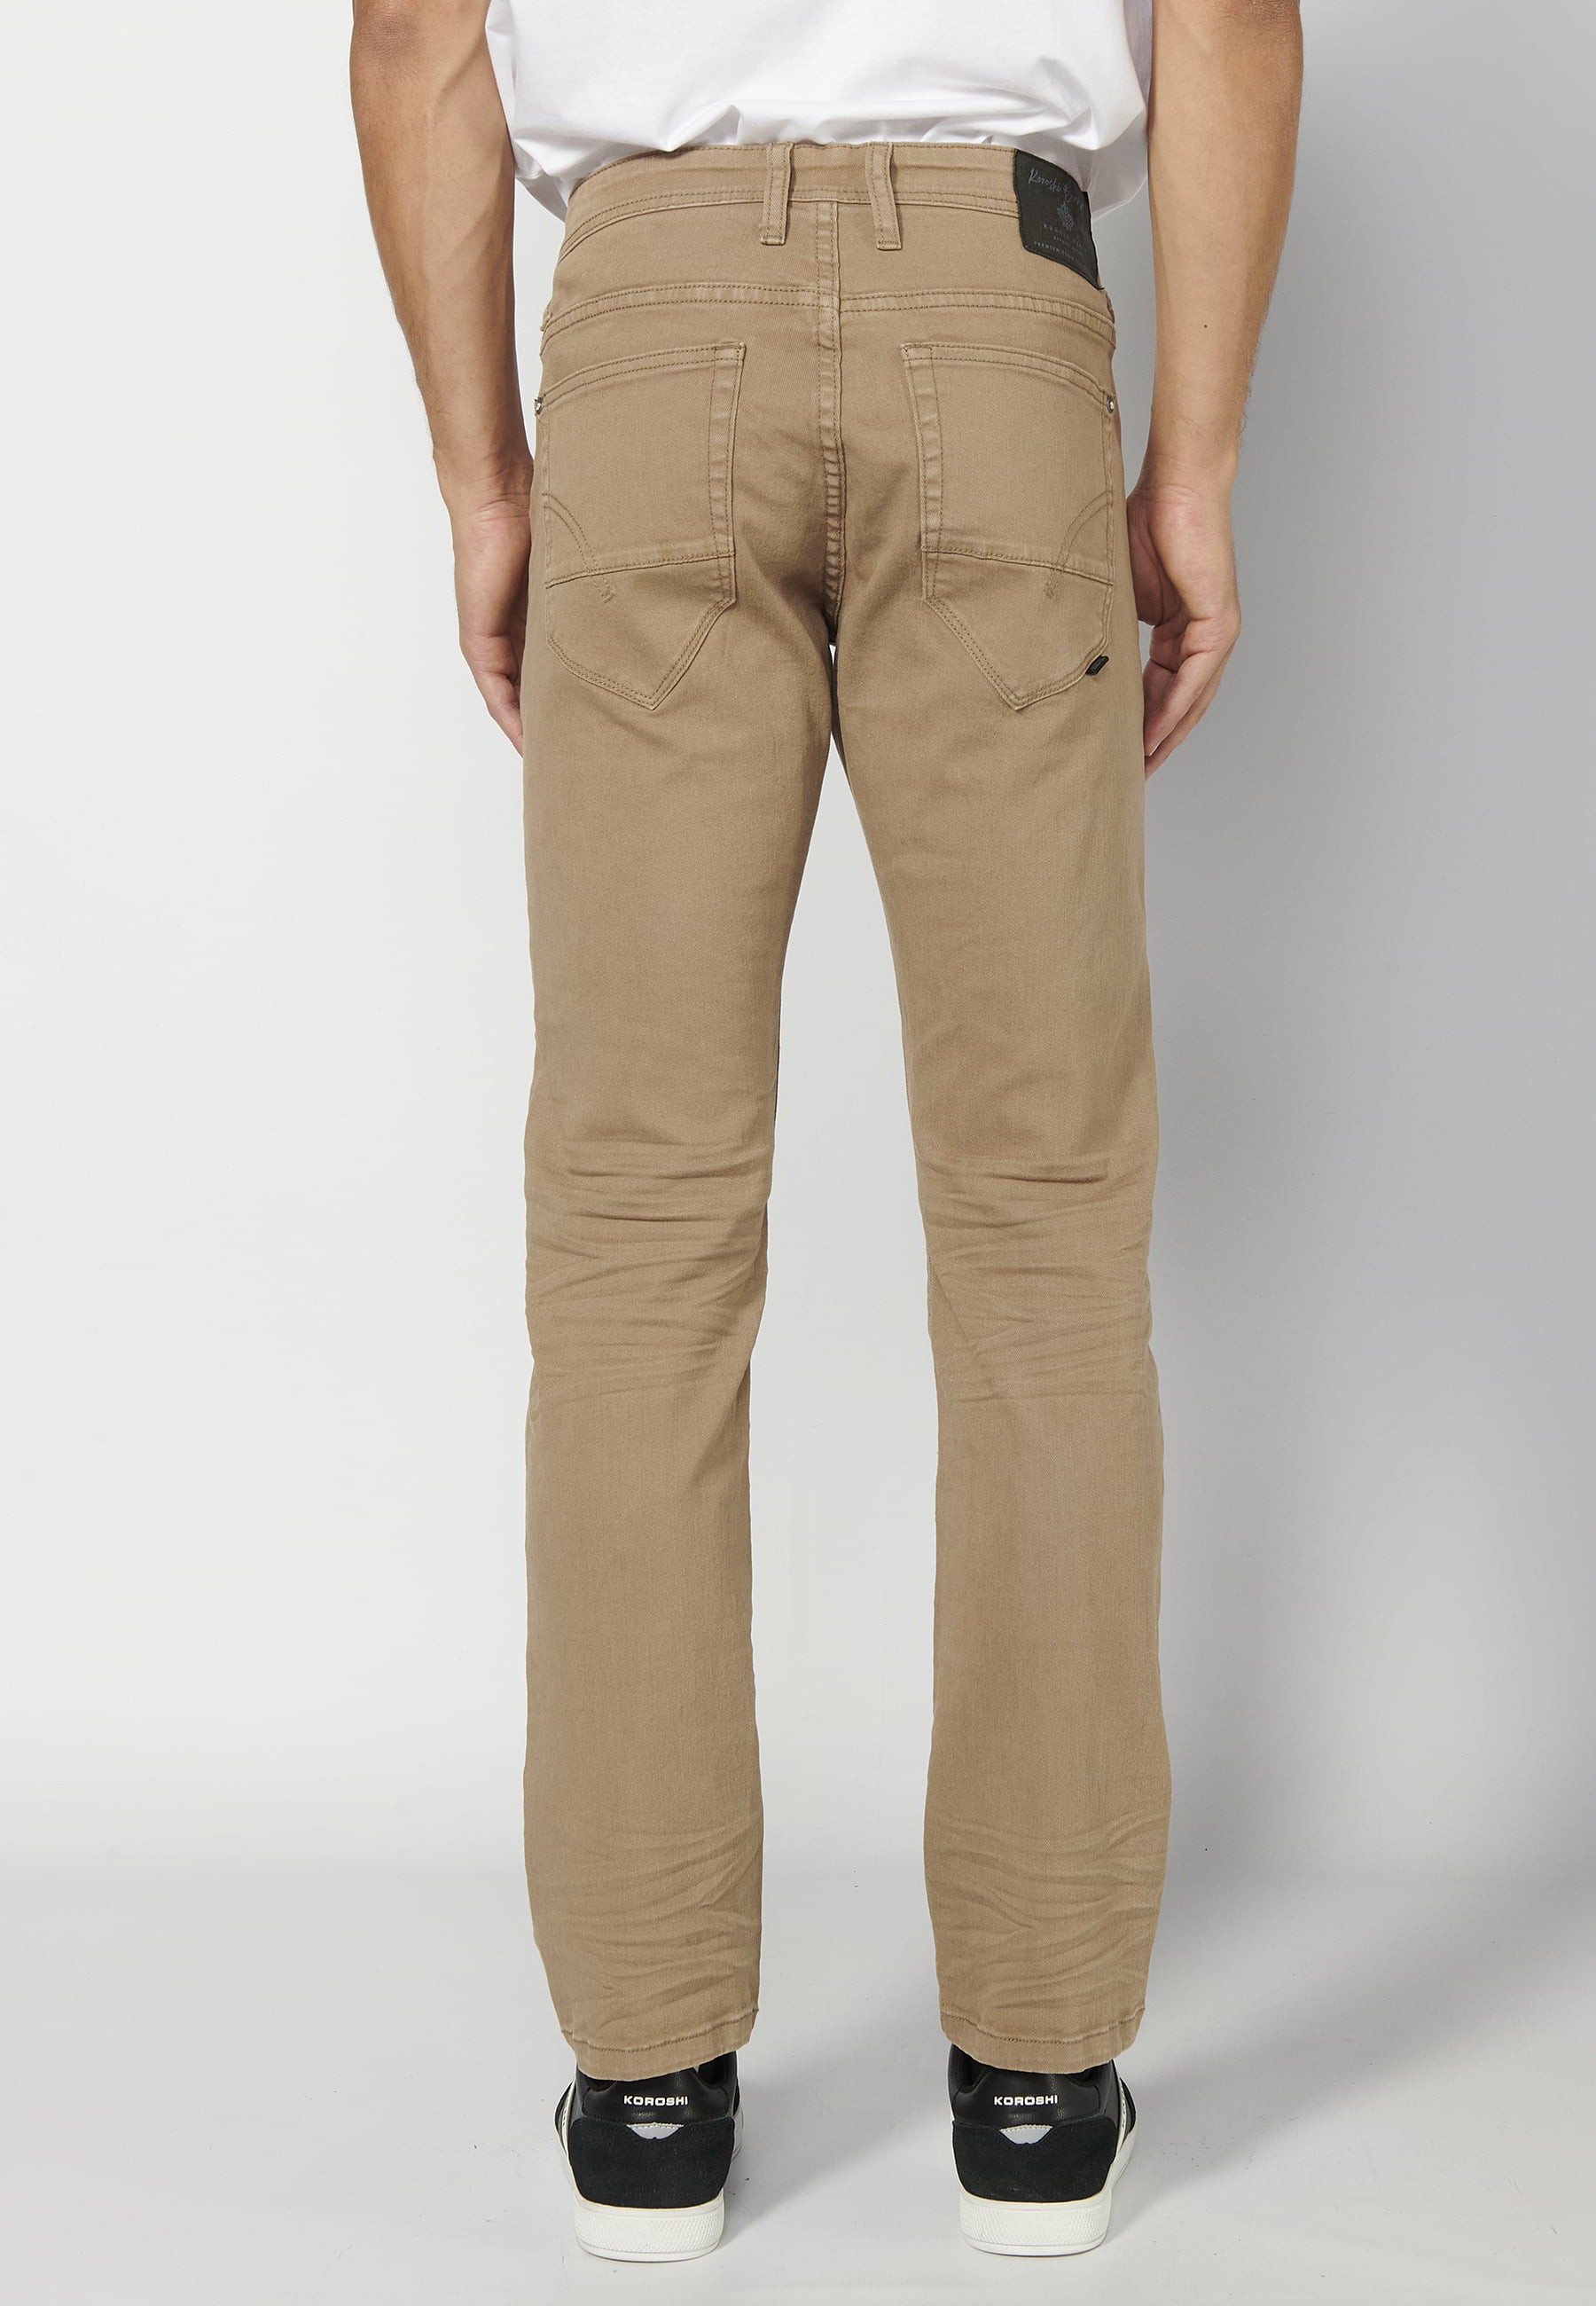 Pantalons llargs strech regular fit, amb cinc butxaques, color Beige, per a Home 2